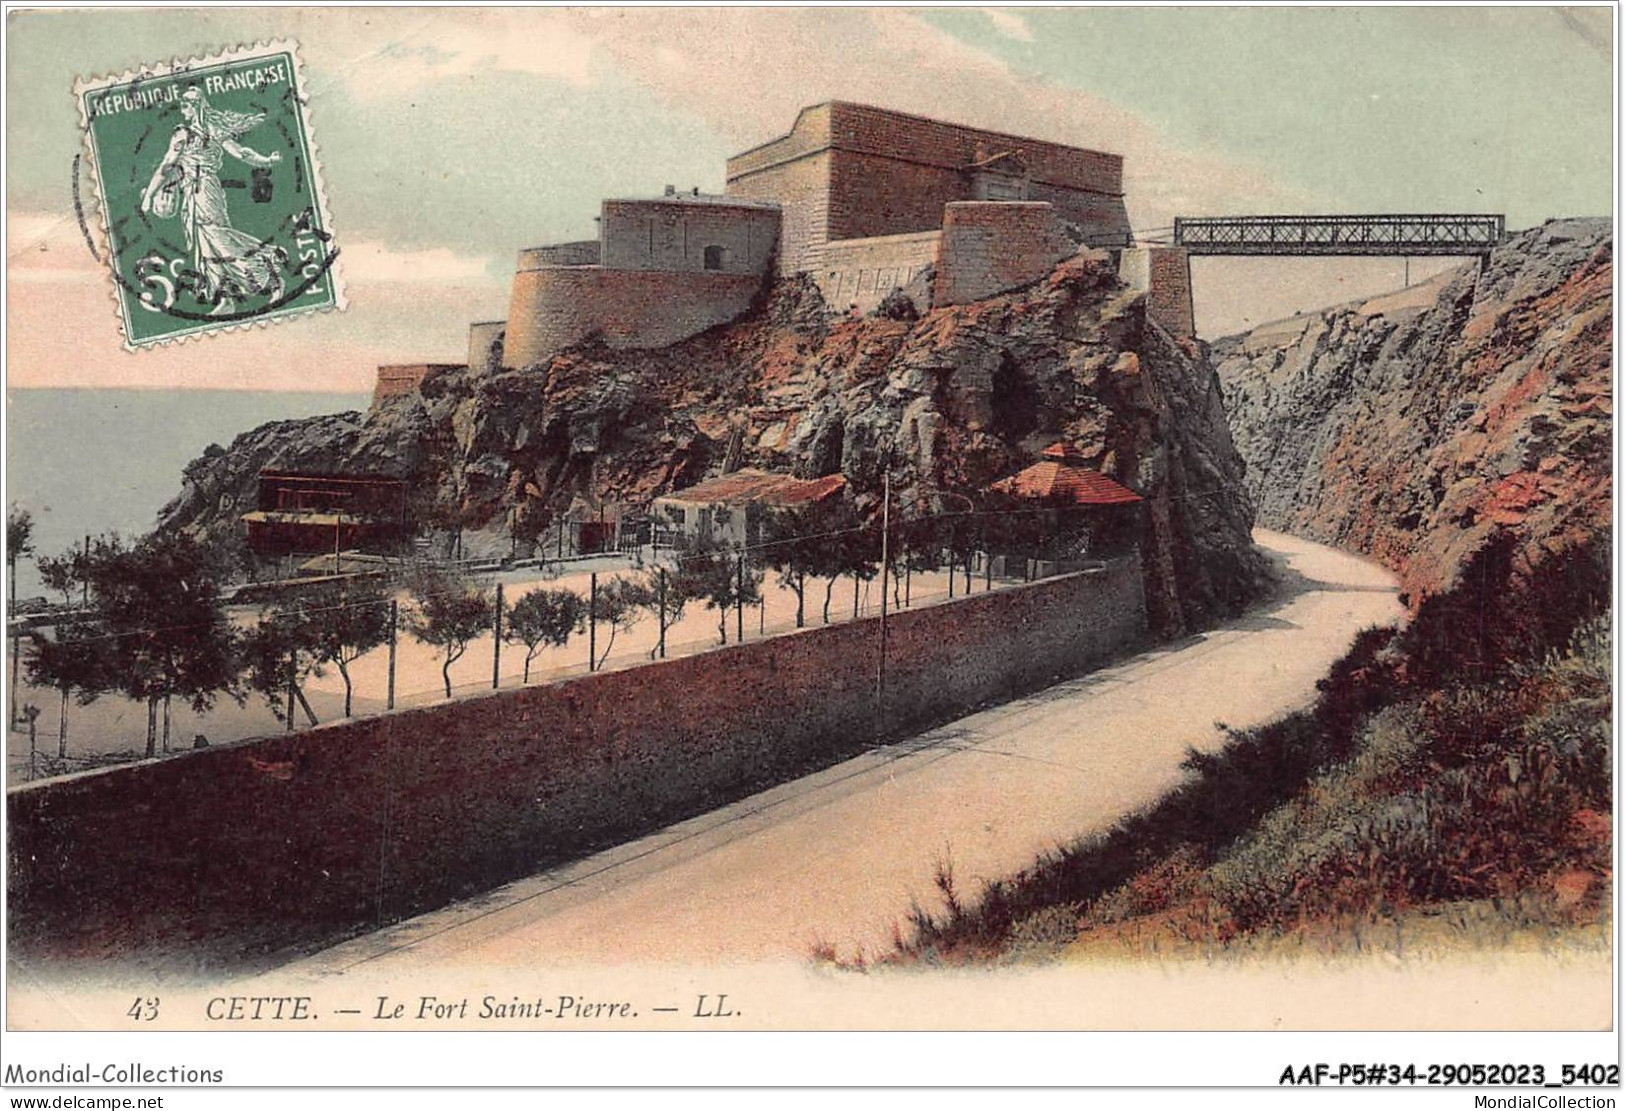 AAFP5-34-0404 - CETTE - Le Fort Saint Pierre - Sete (Cette)